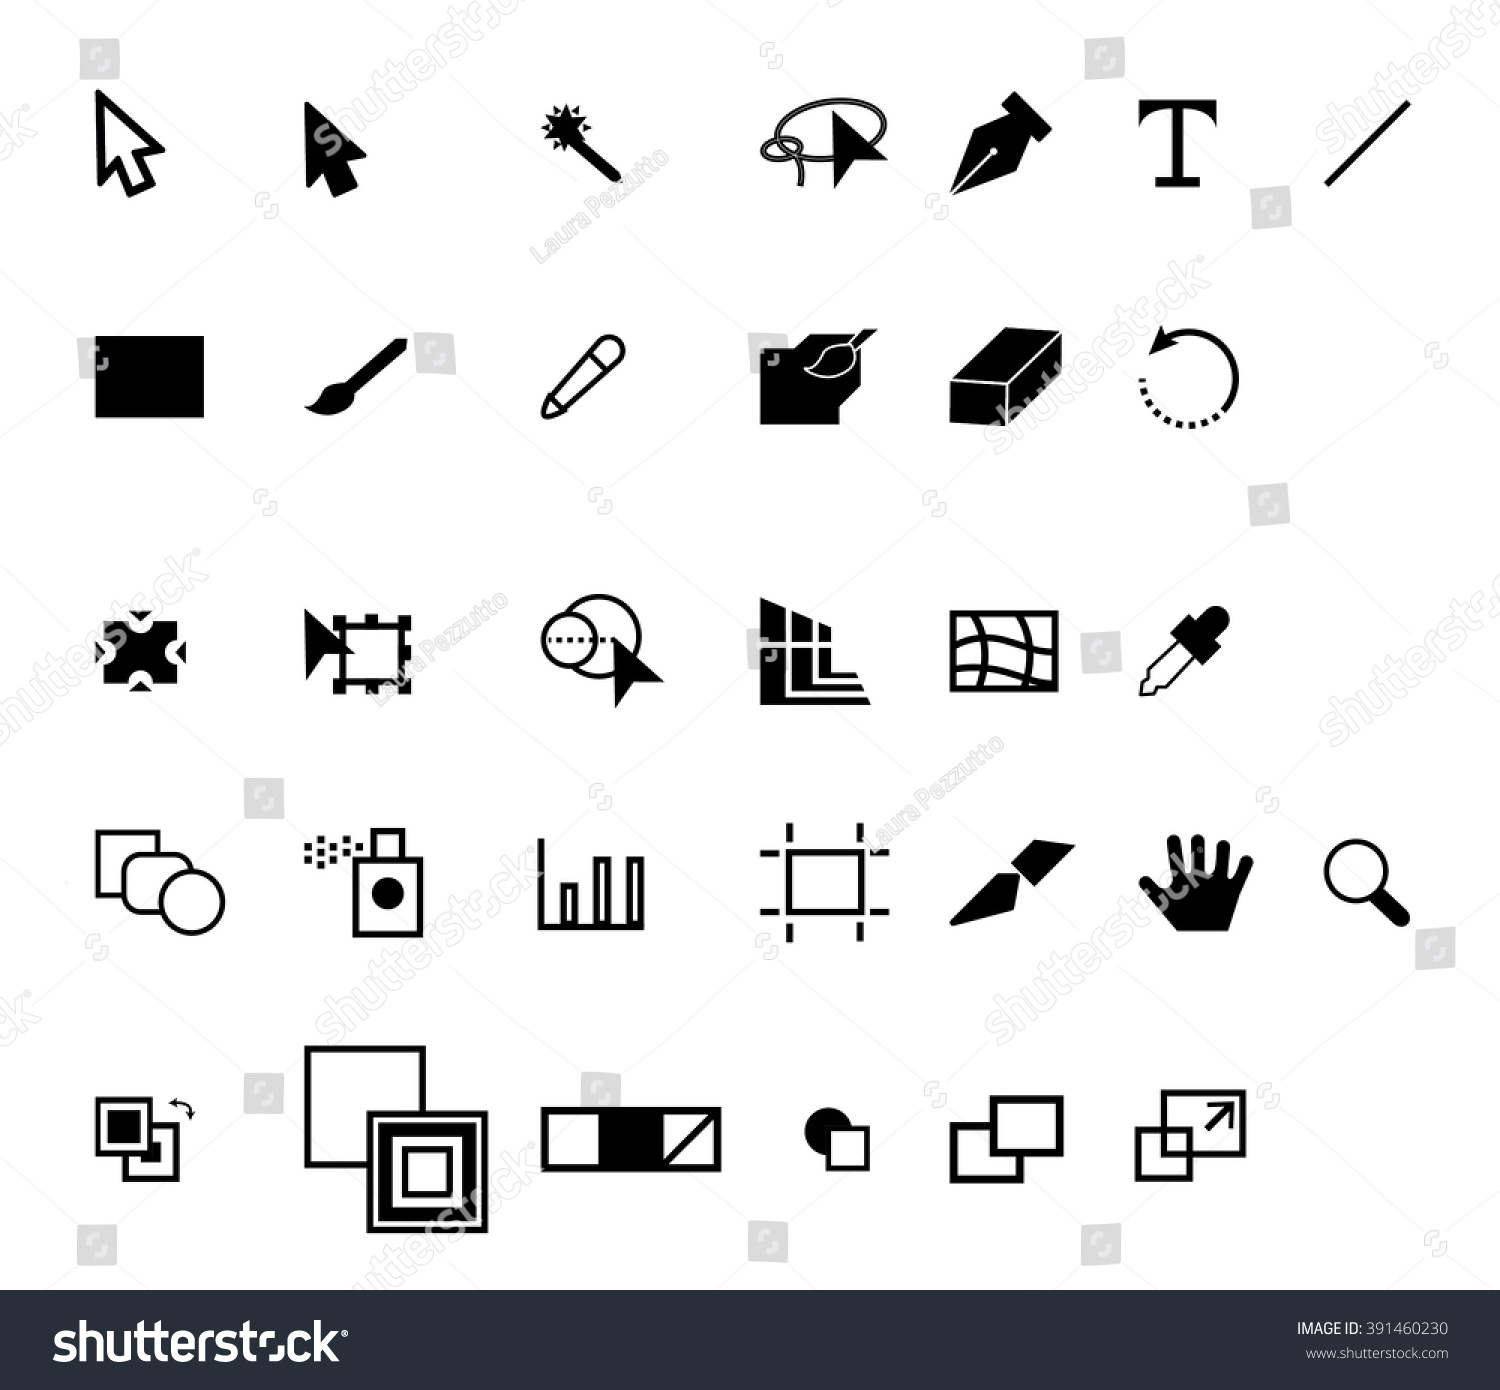 Linea - Full icon set (AI) - Freebiesbug